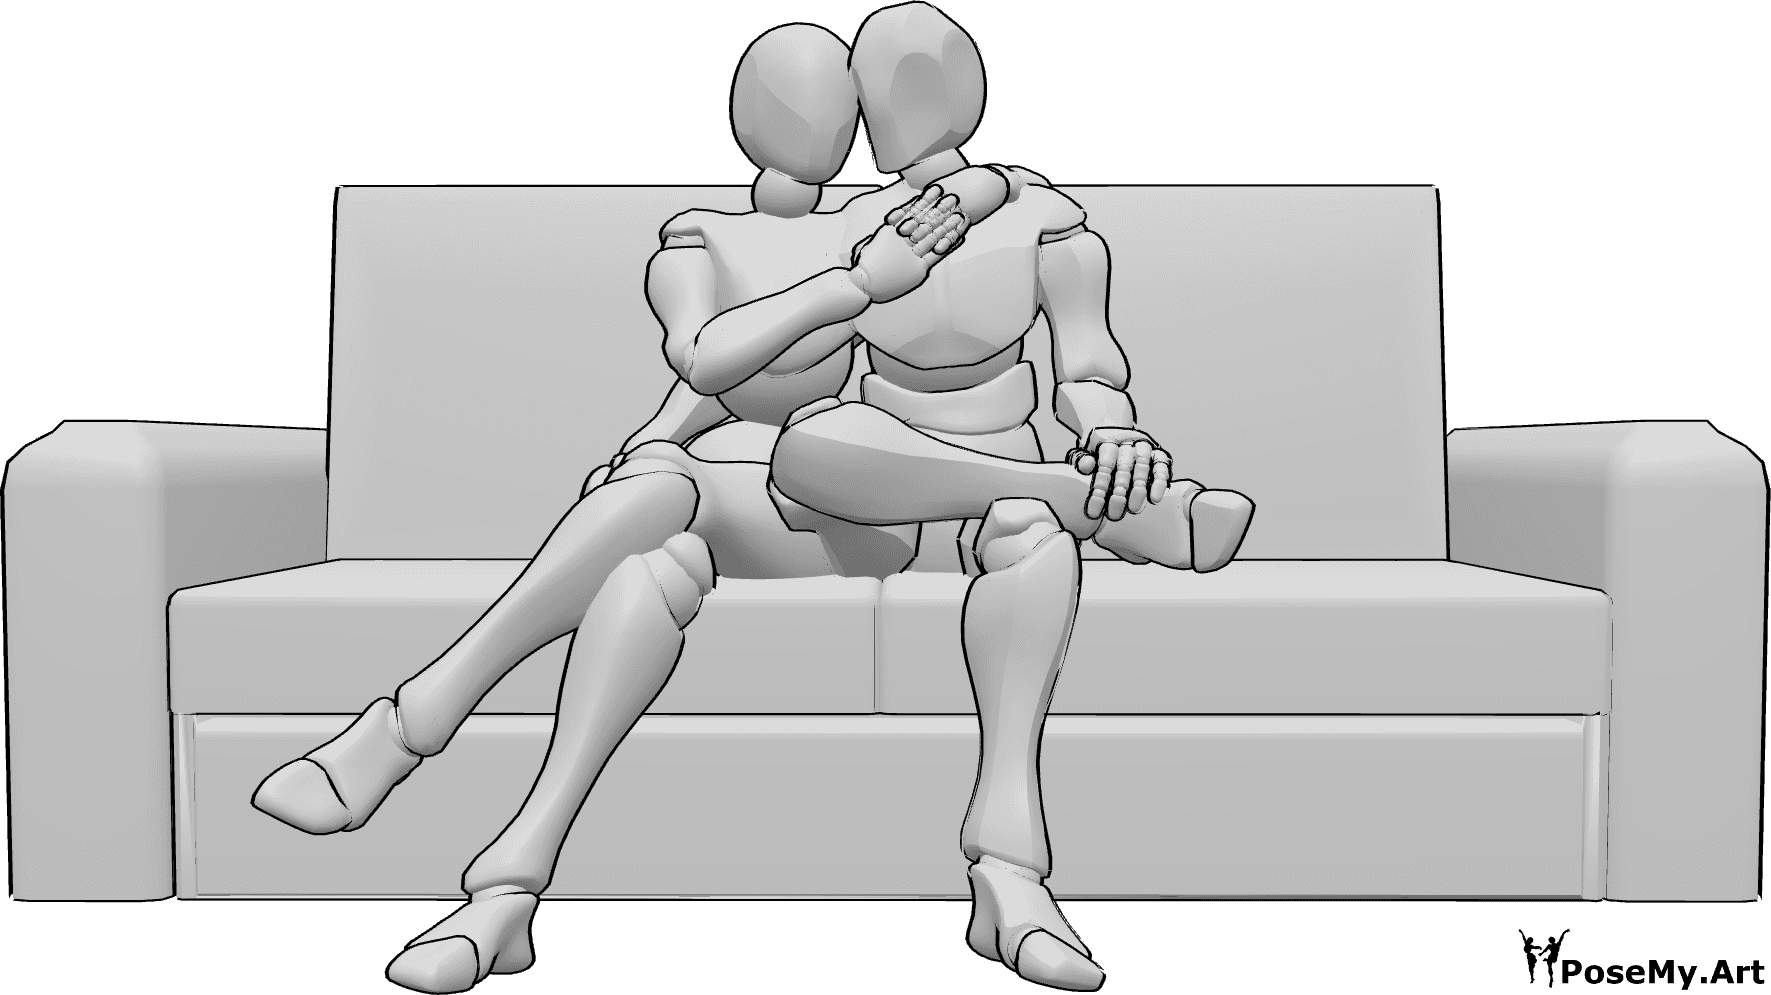 Referencia de poses- Acurrucarse sentado en el sofá - La mujer y el hombre están sentados en el sofá y se abrazan.